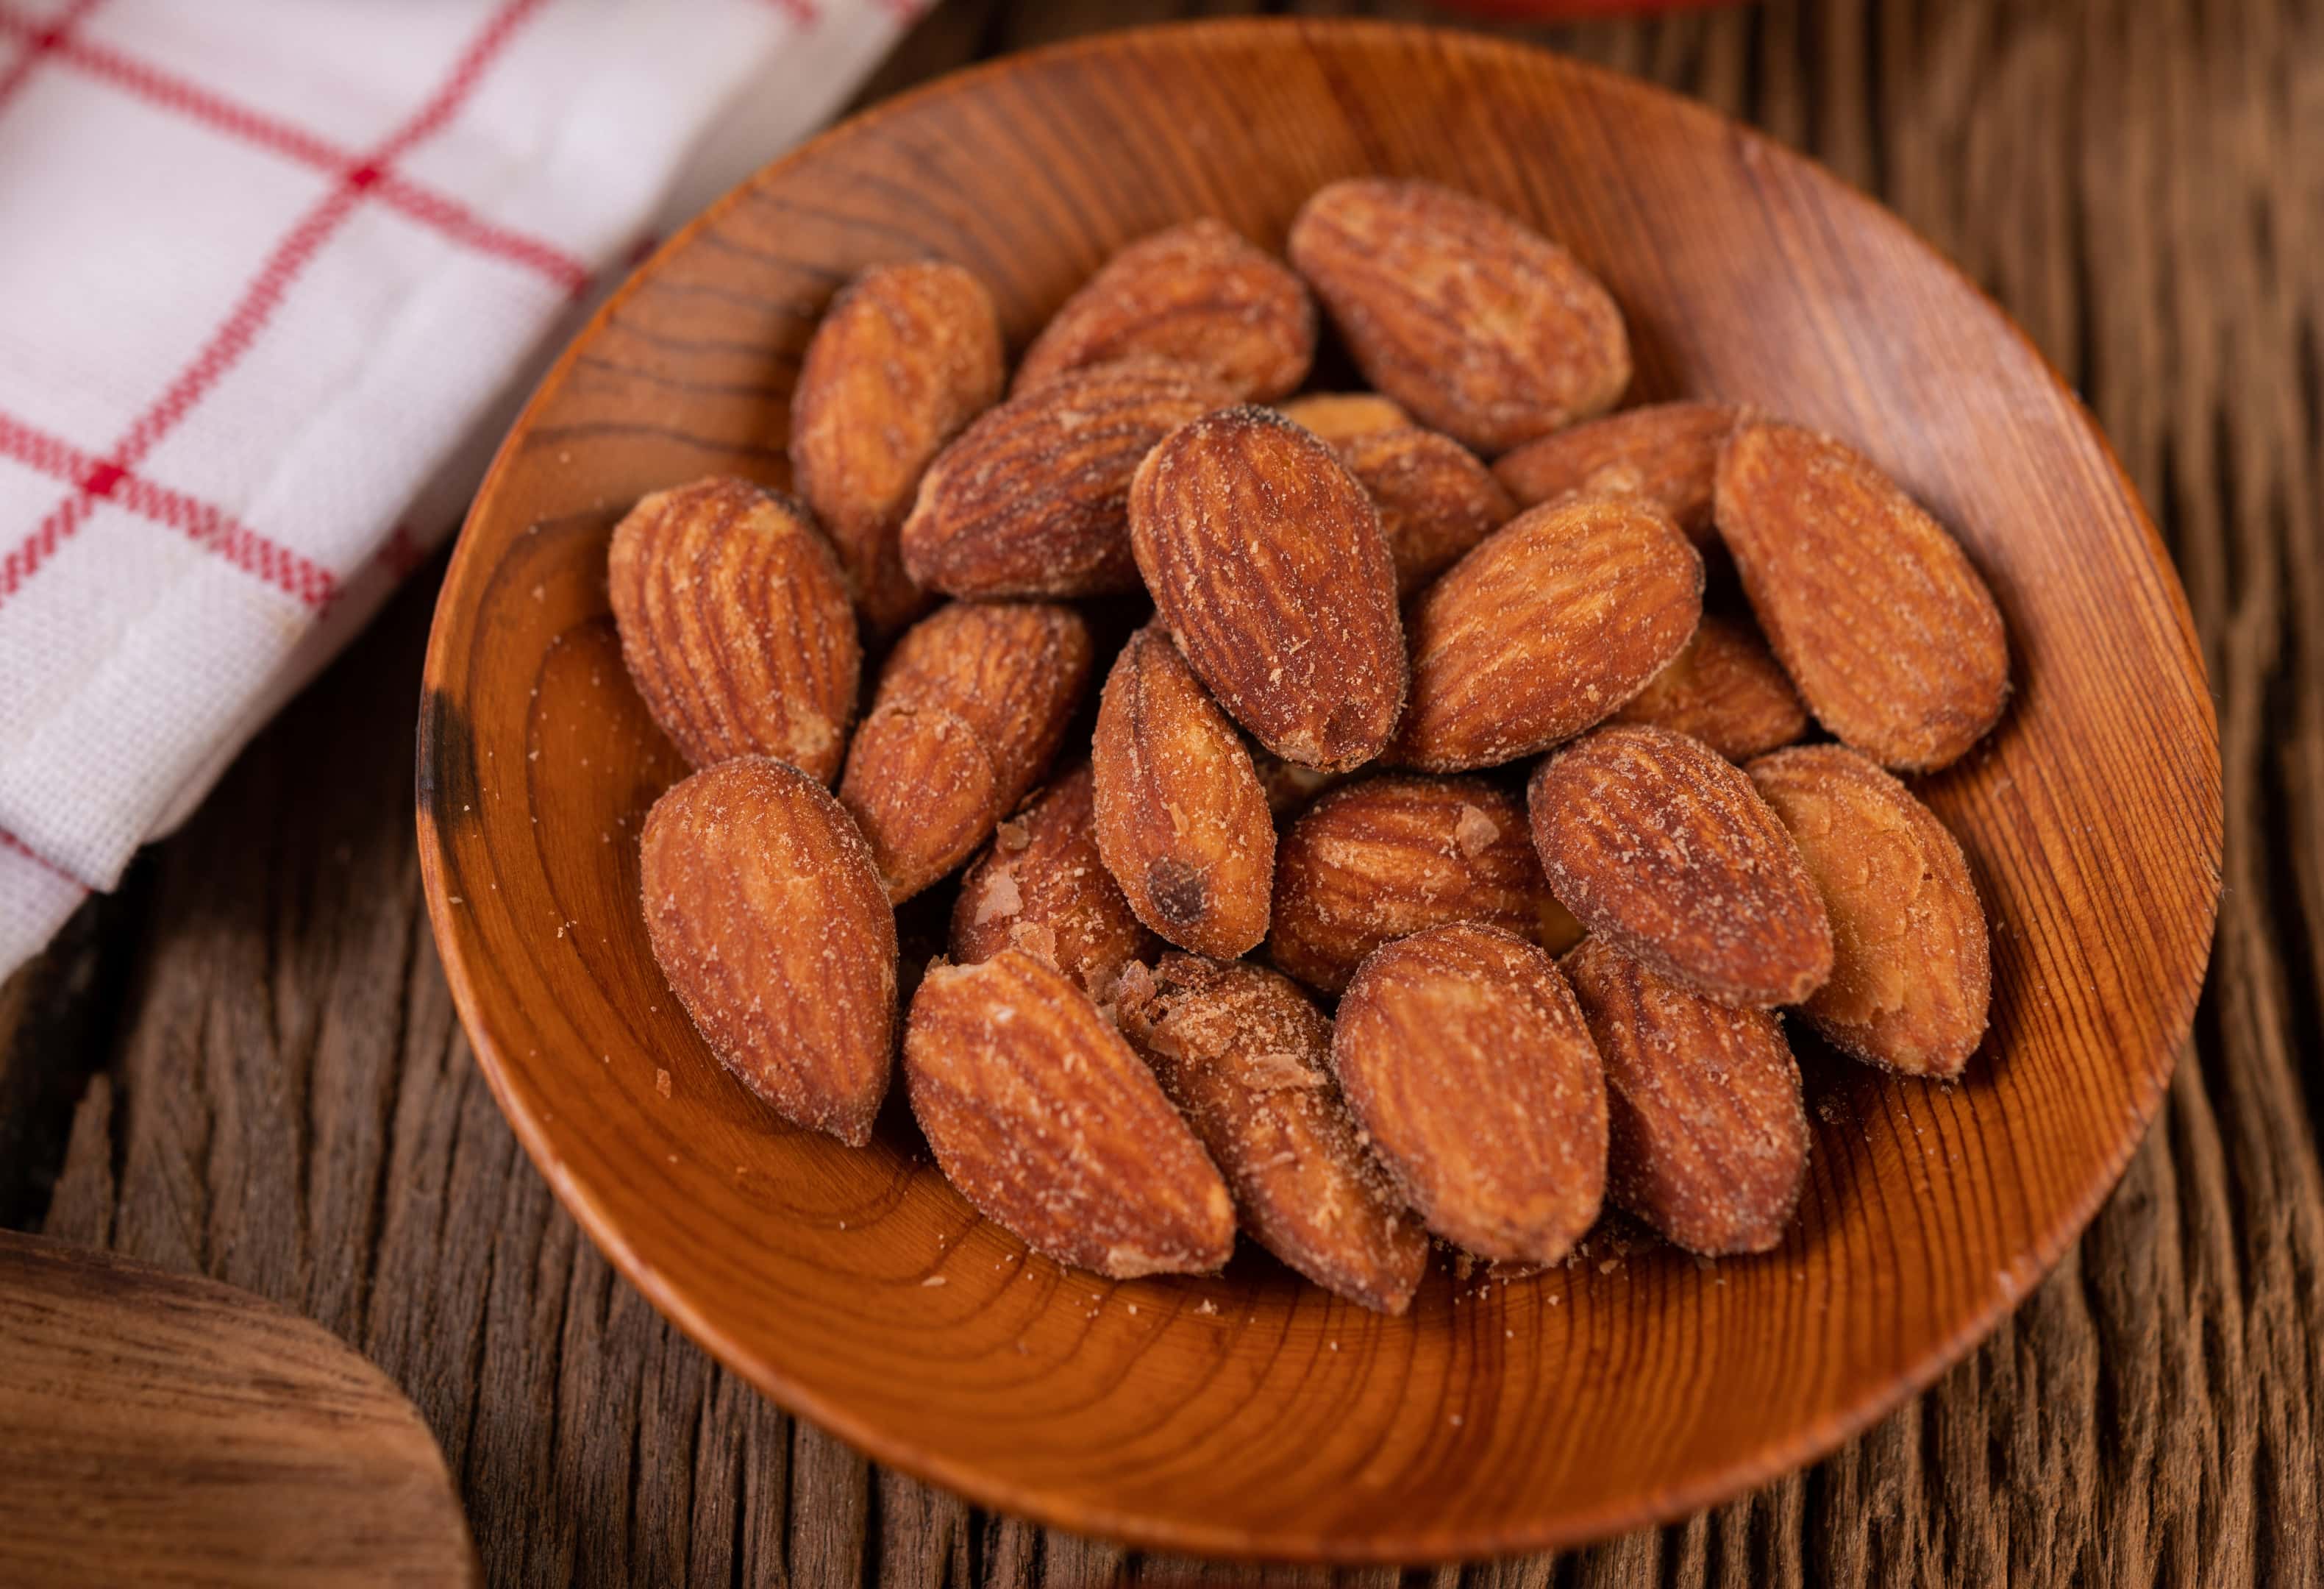 Roasted Tamari almonds in a plate